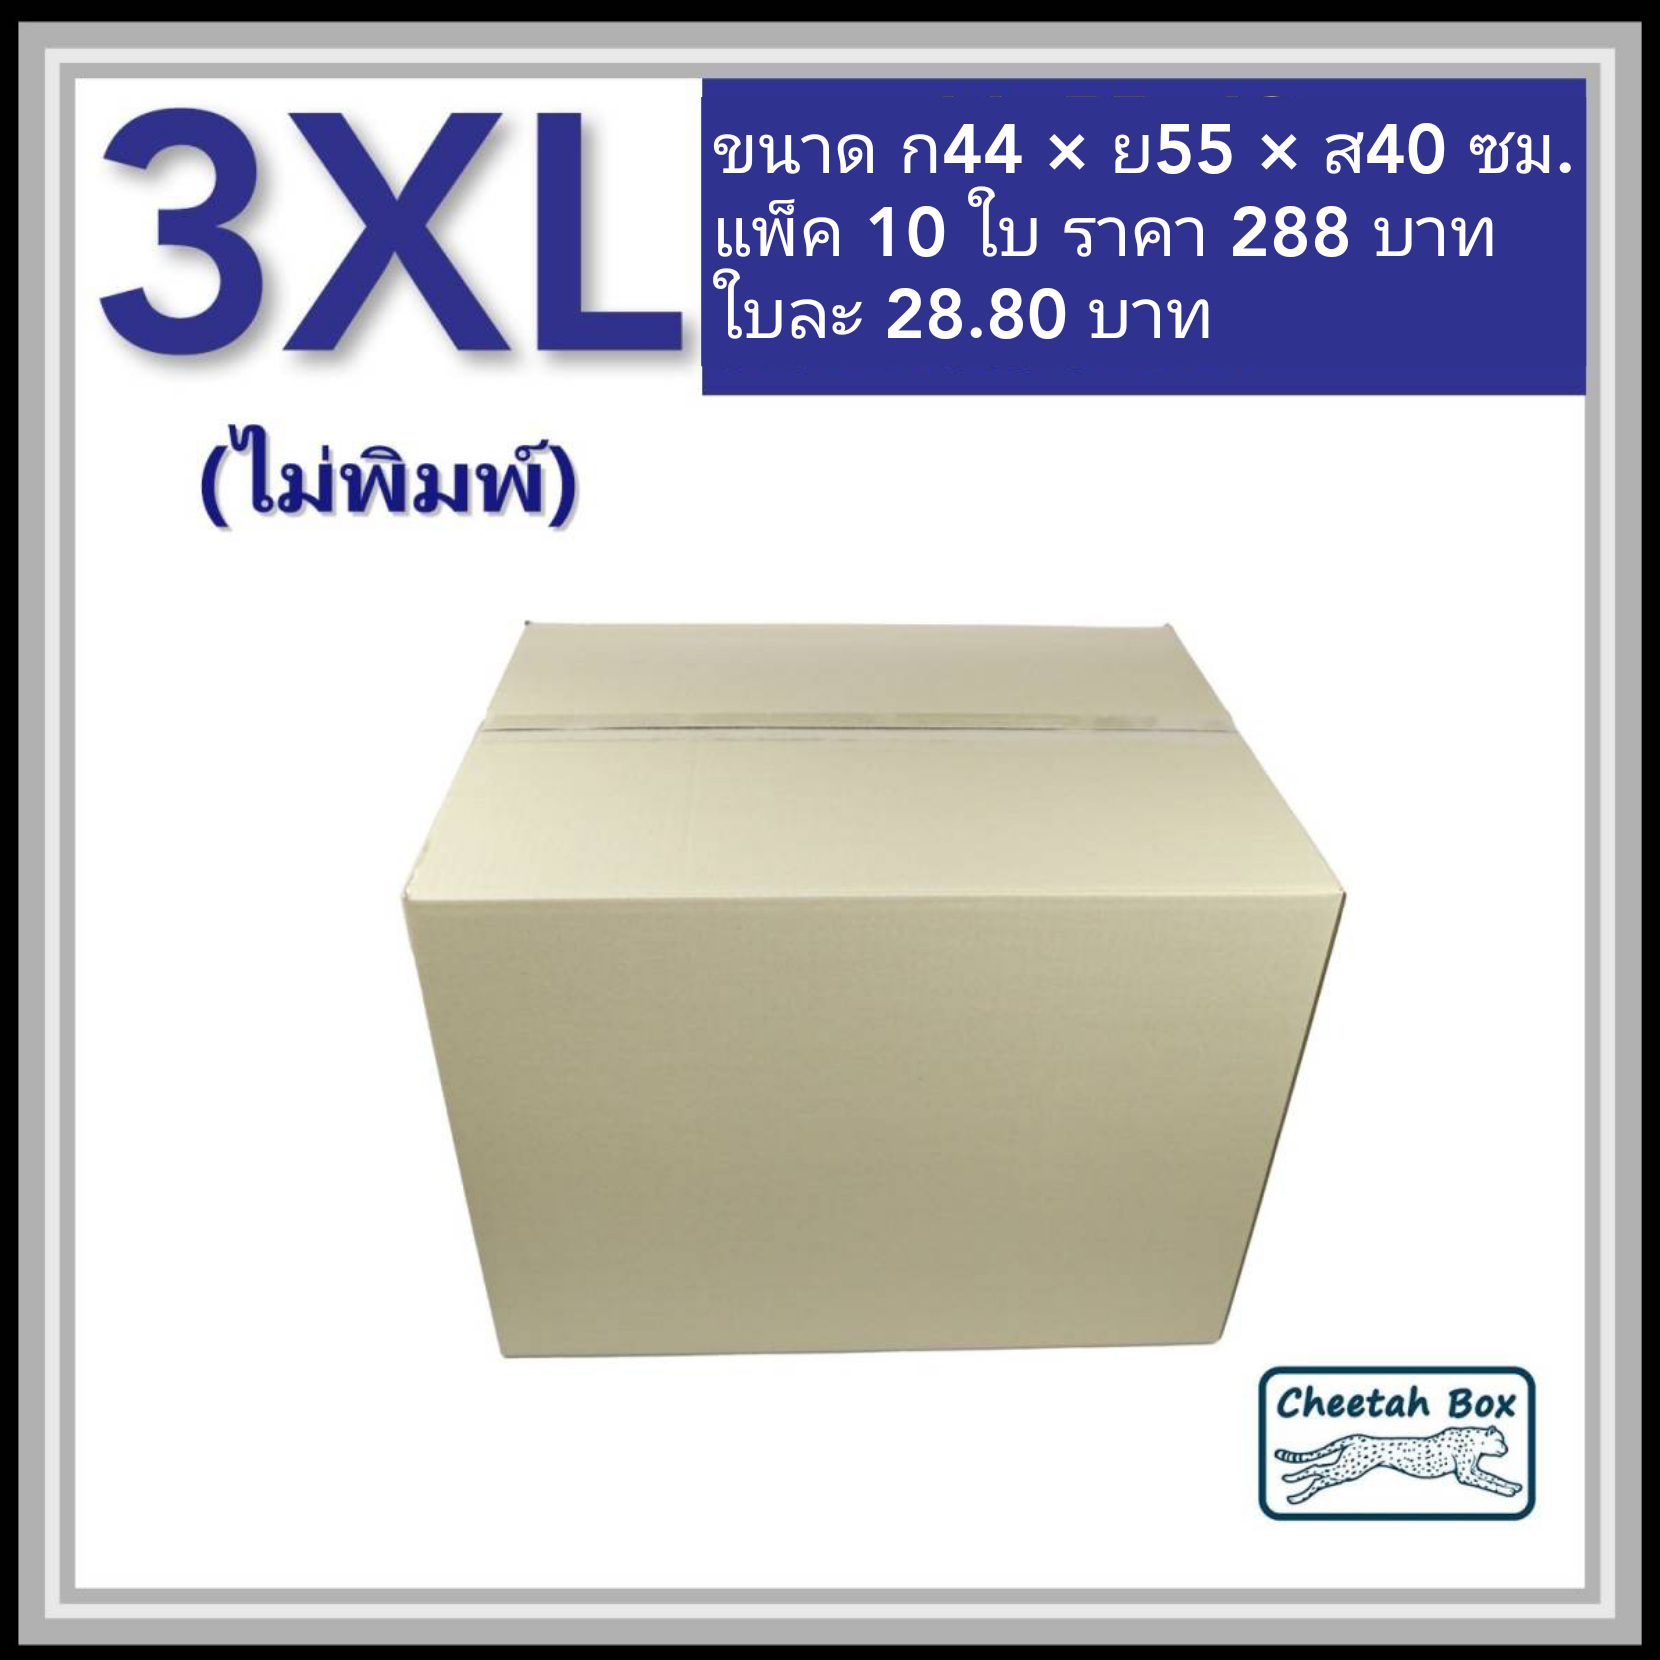 กล่องพัสดุ 3 ชั้น รหัส 3XL ไม่พิมพ์ (Cheetah Box) 44W x 55L x 40H cm.